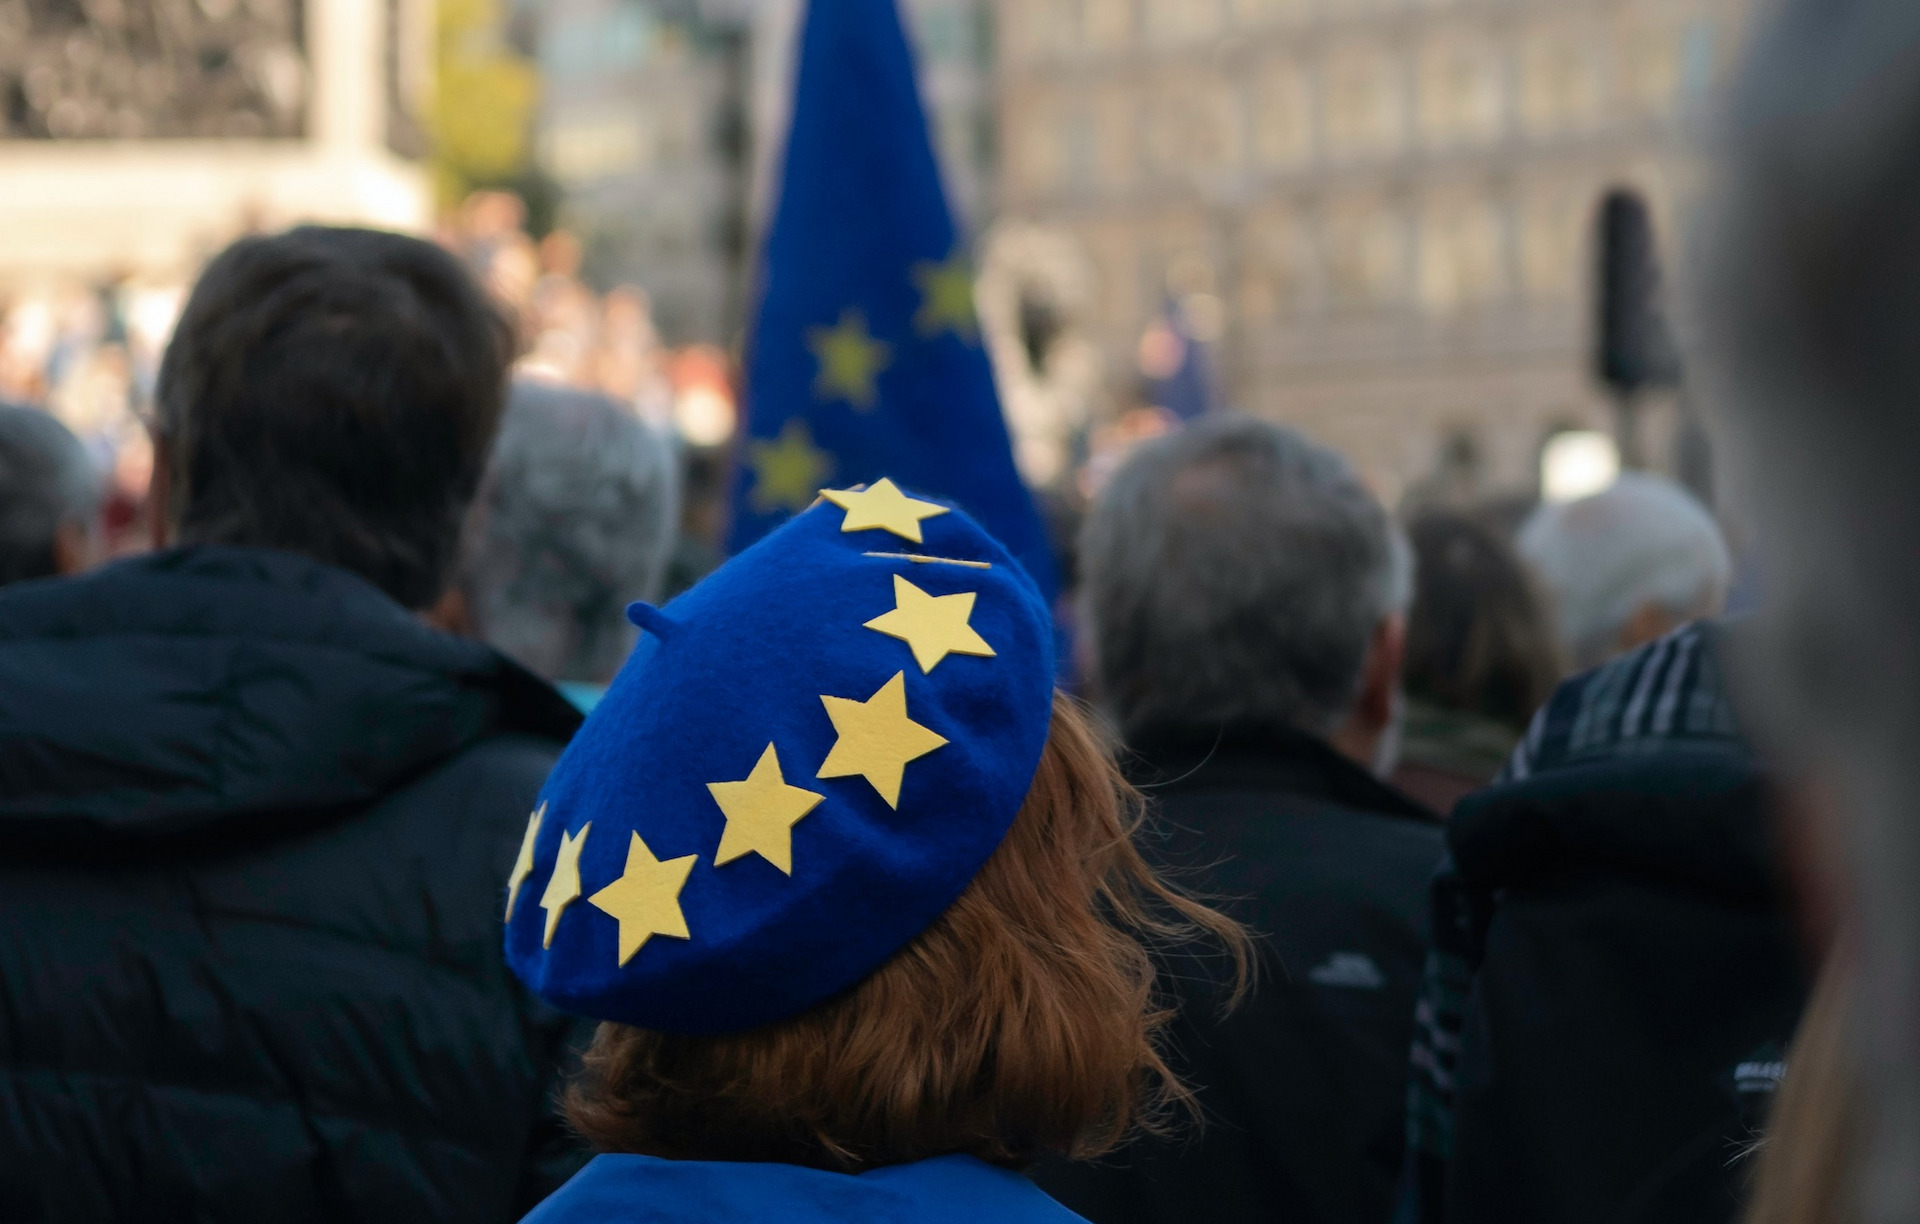 Eine Person auf einer Demo für Europa trägt eine blaue Mütze mit gelben Sternen